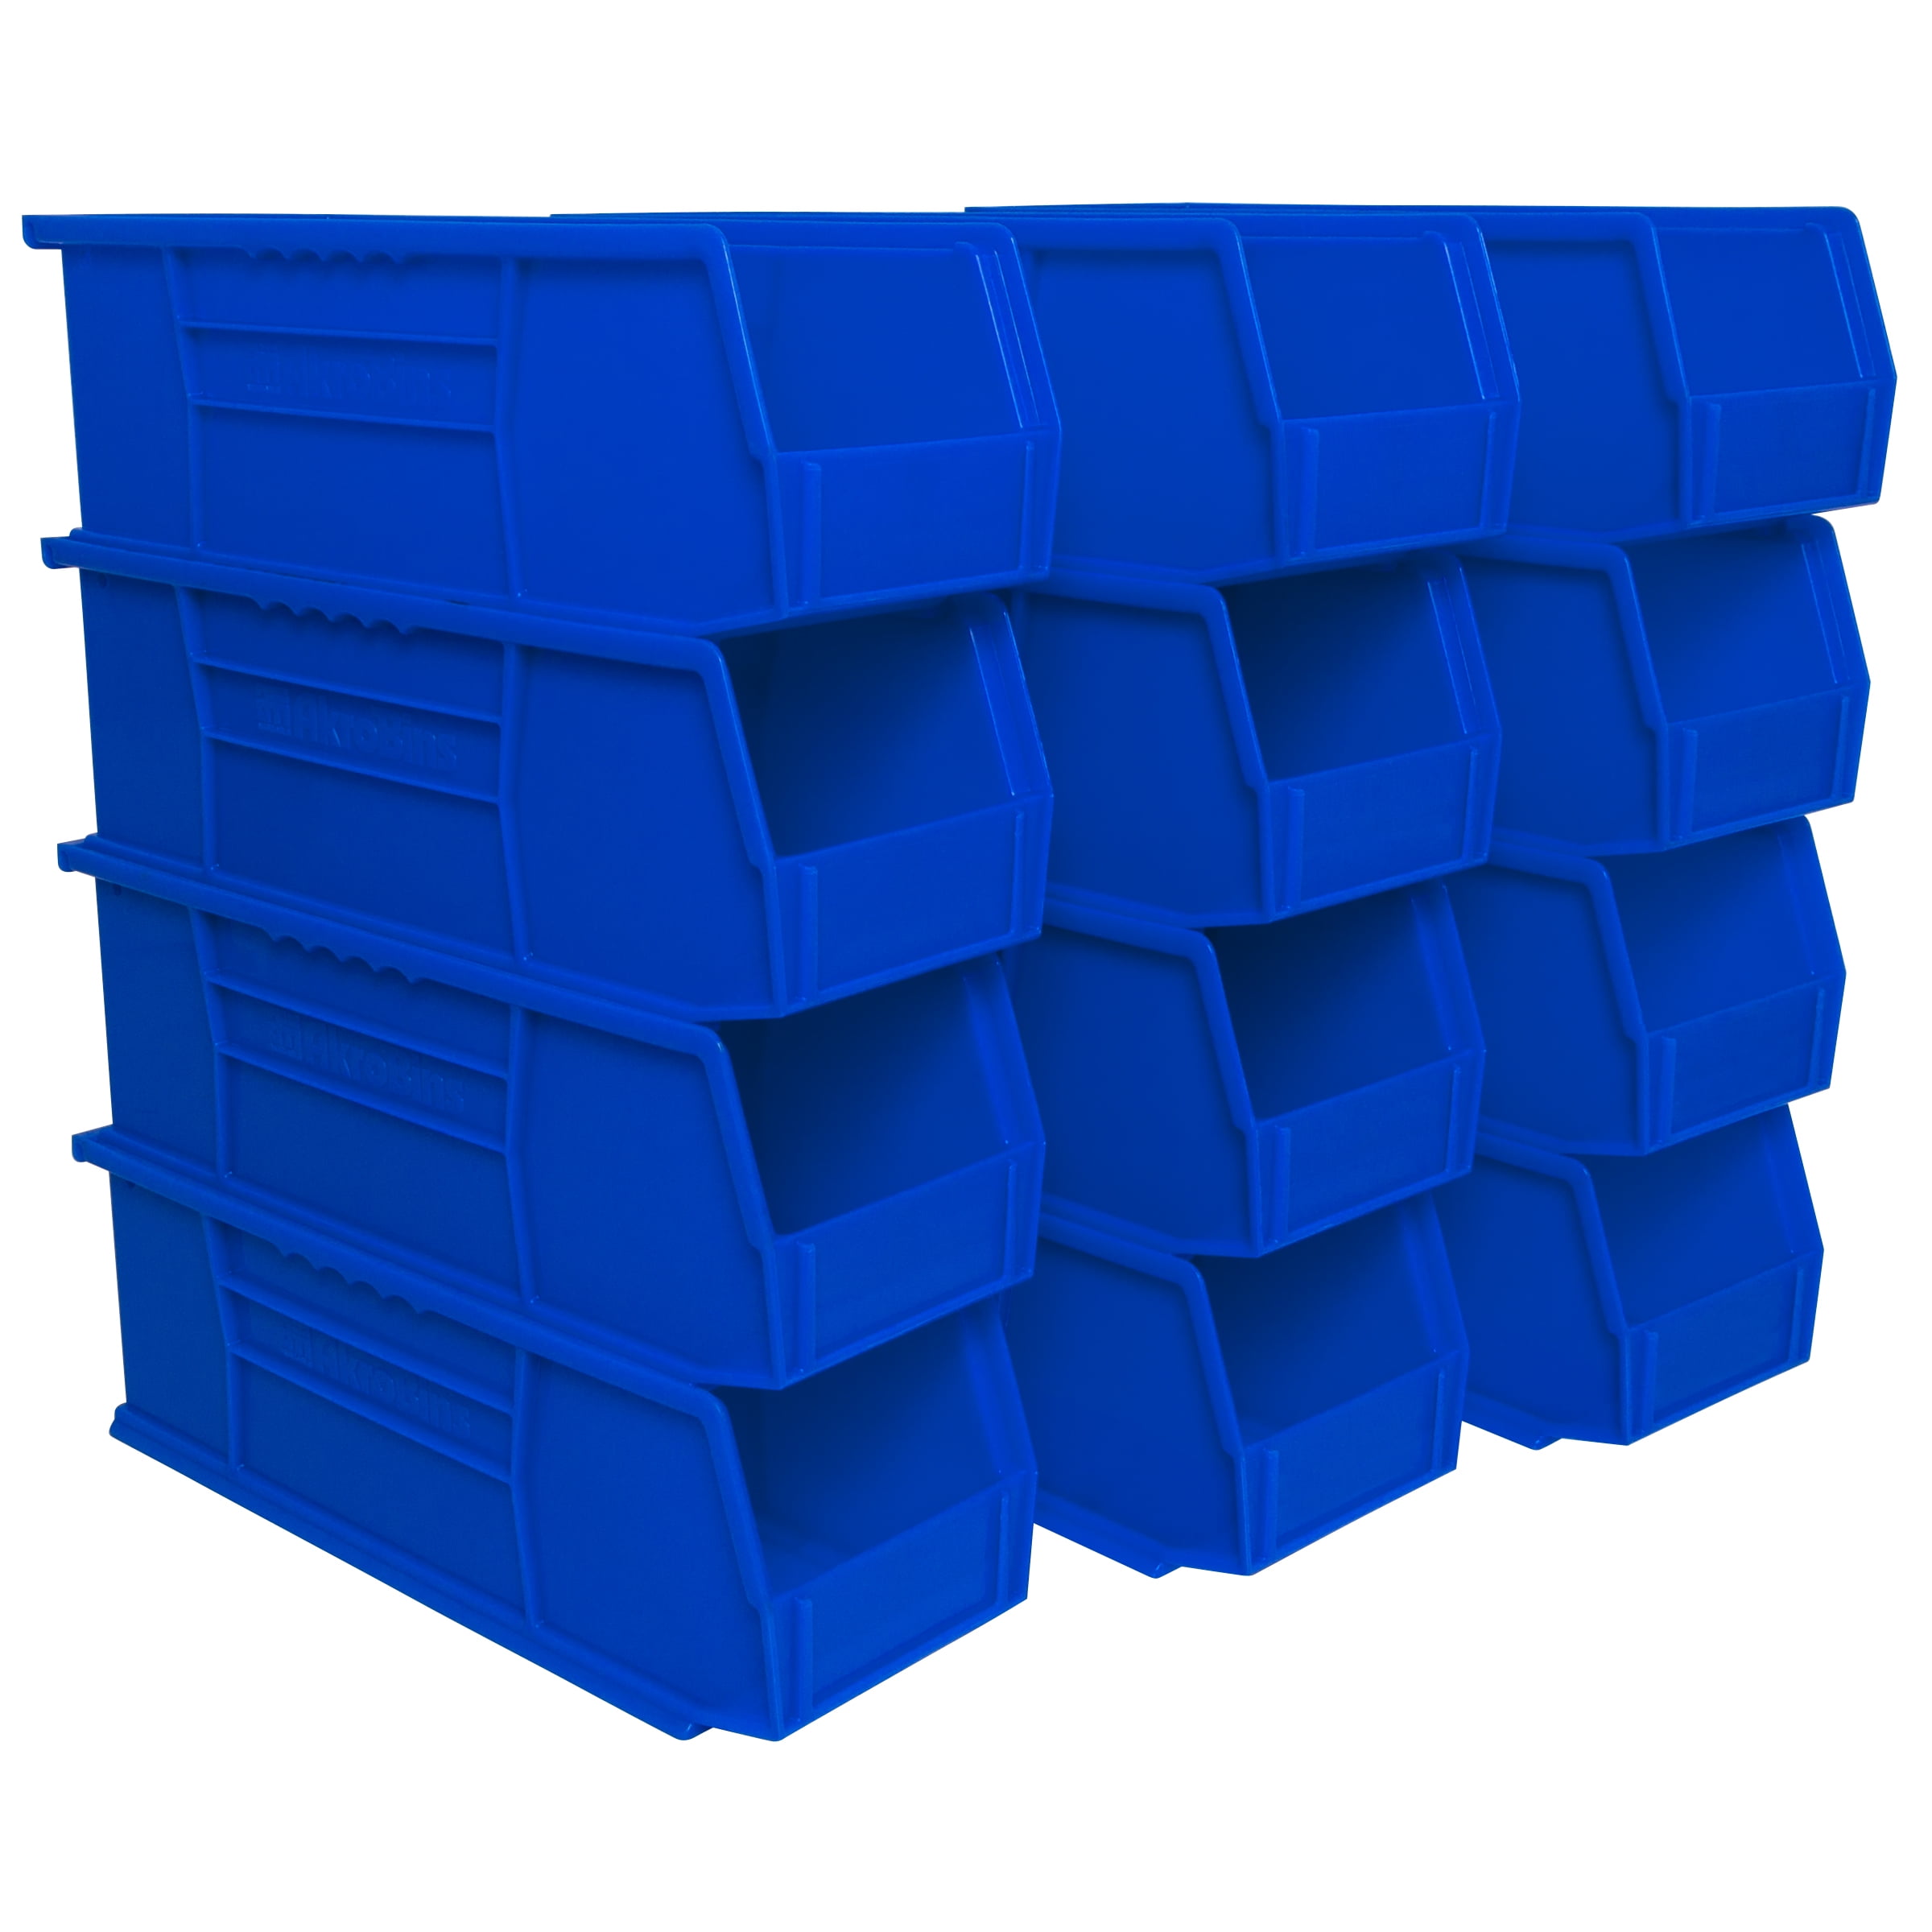 Akro-Mils Shelf Bin, Blue, 4 inH x 11 5/8 Inl x 4 1/8 inW, 1ea